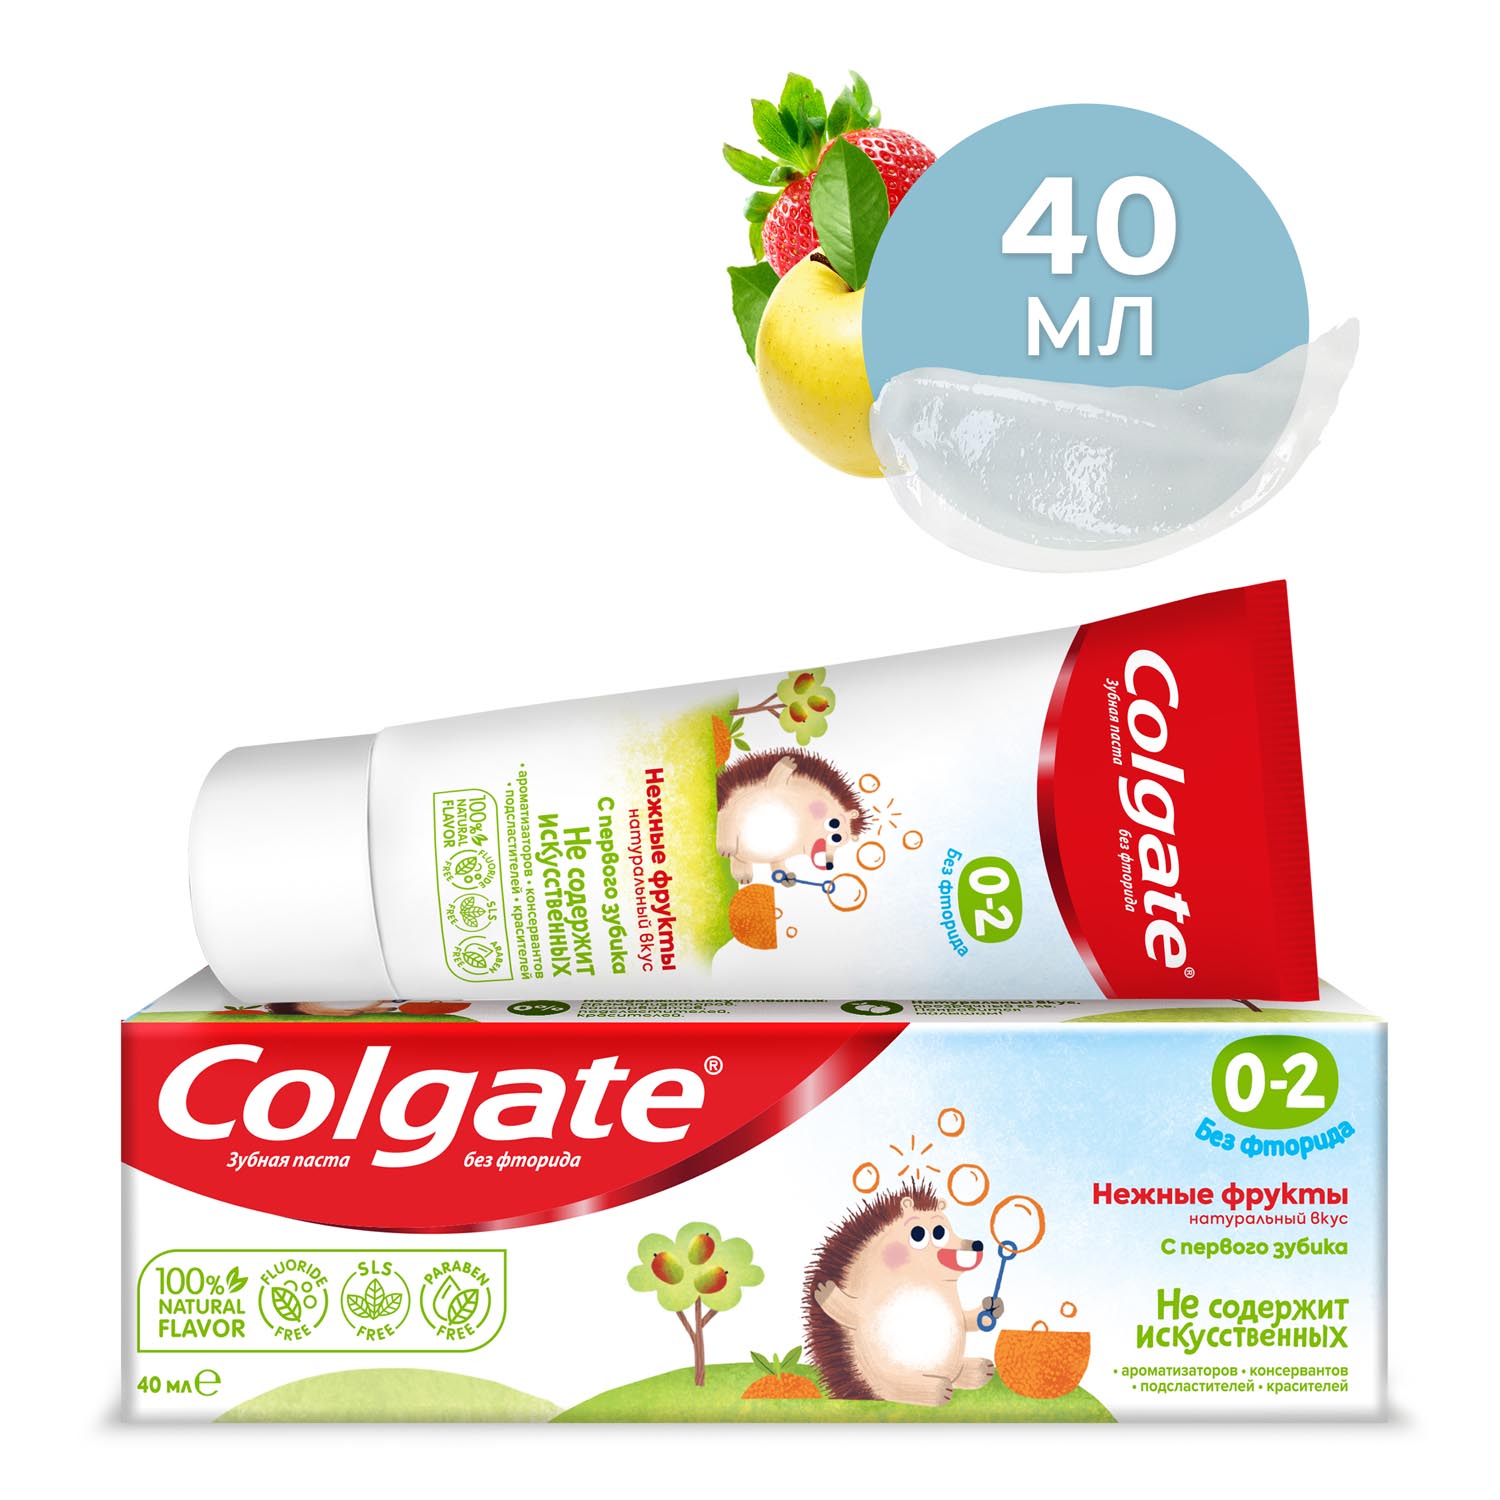 Зубная паста детская Colgate 0-2, без фторида, для детей от 0 до 2 лет, со вкусом нежных фруктов, 40 мл детская зубная паста r o с s junior шоколад и карамель 74 г